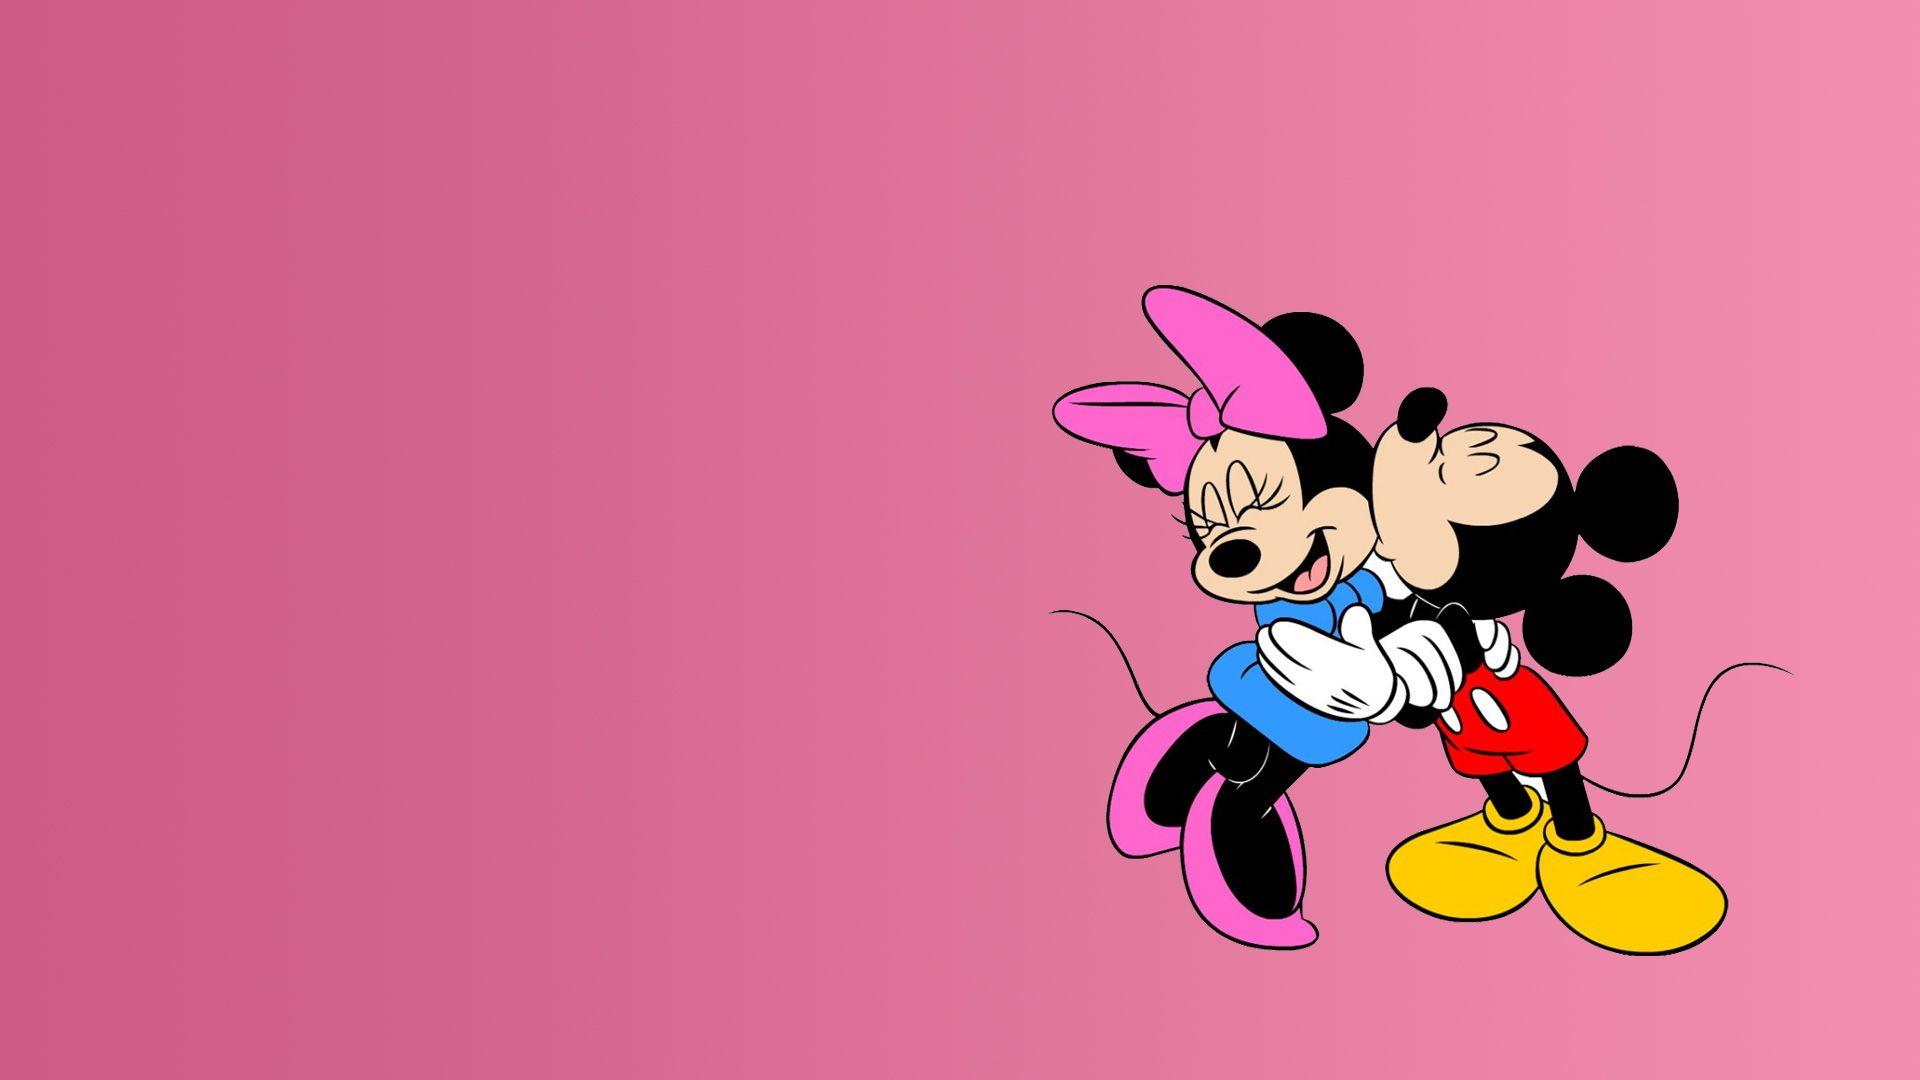 1920x1080 Tải xuống miễn phí Hình nền chuột Mickey và Minnie Hình nền nghệ thuật điên [1920x1080] cho Máy tính để bàn, Di động & Máy tính bảng của bạn.  Khám phá Hình nền chuột Mickey và Minnie.  Hình nền chuột Minnie, Chuột Minnie